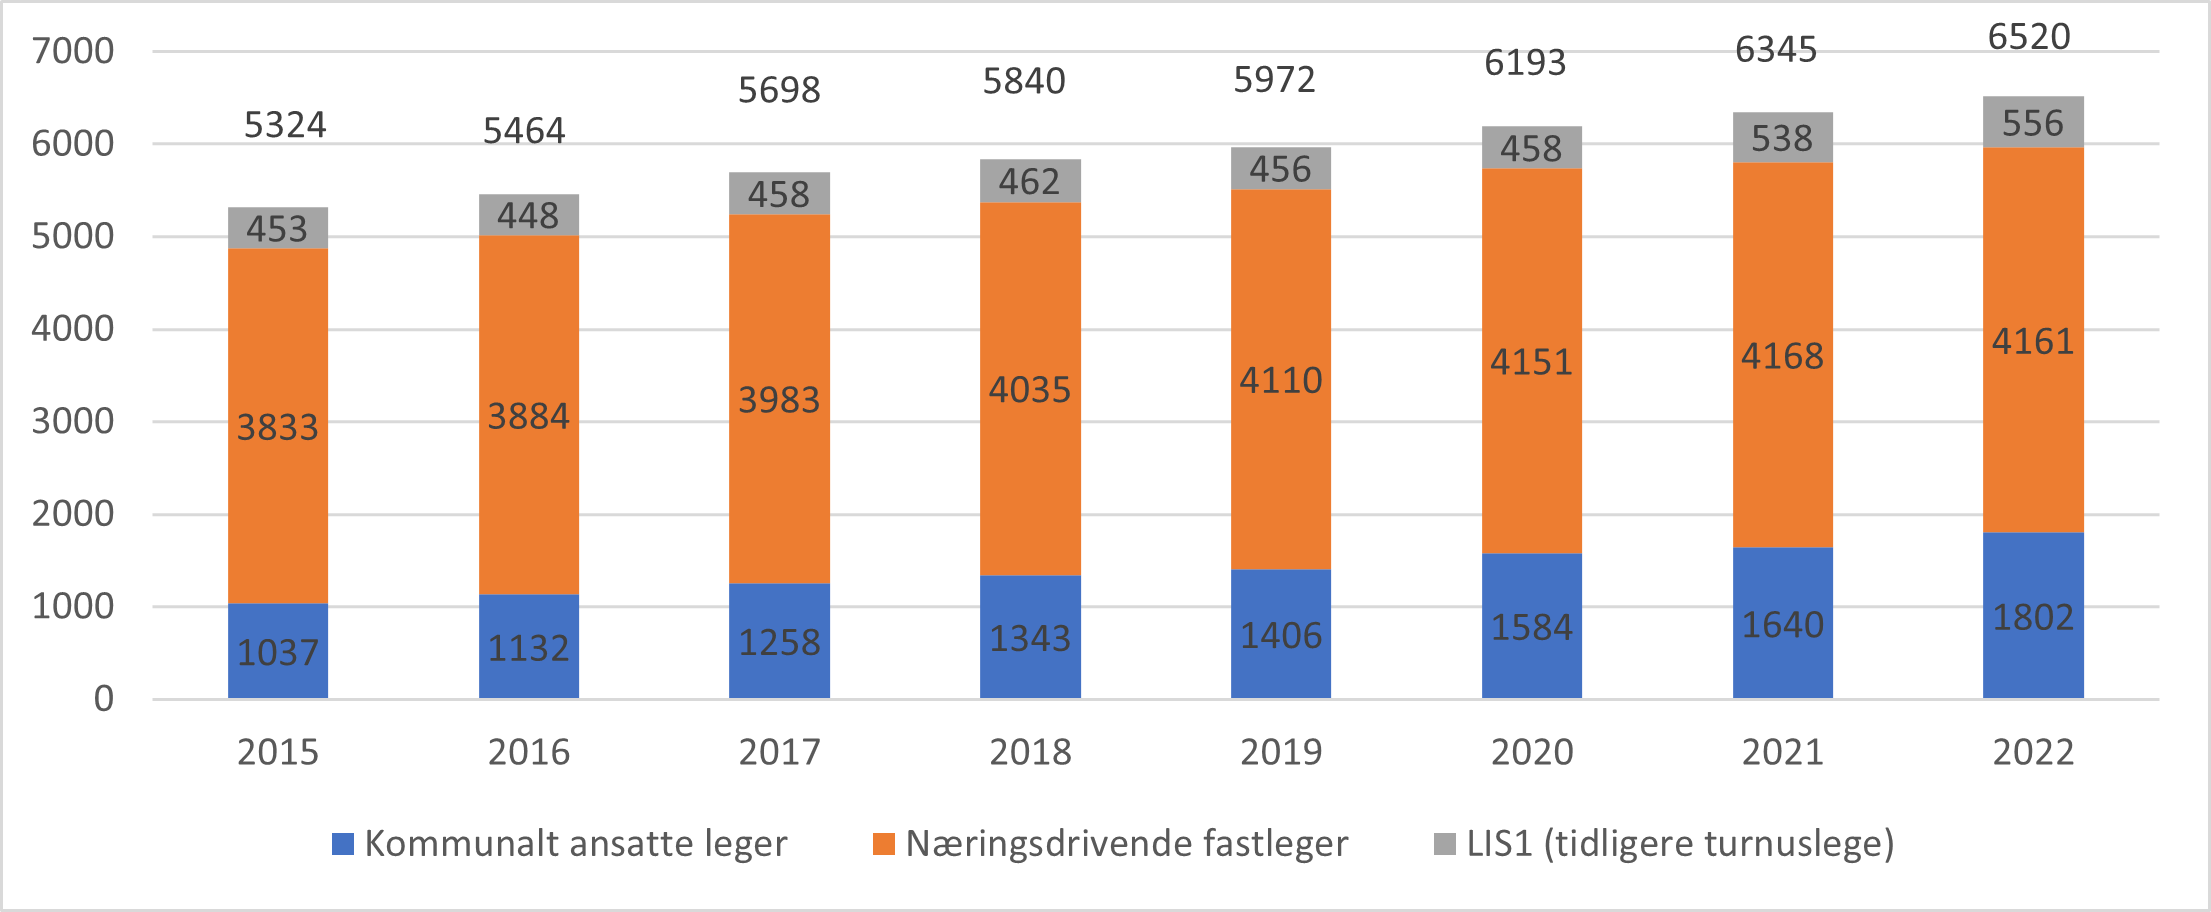 Avtalte legeårsverk i kommunale helse- og omsorgstjenester, etter avtaleform, 2015-2022.